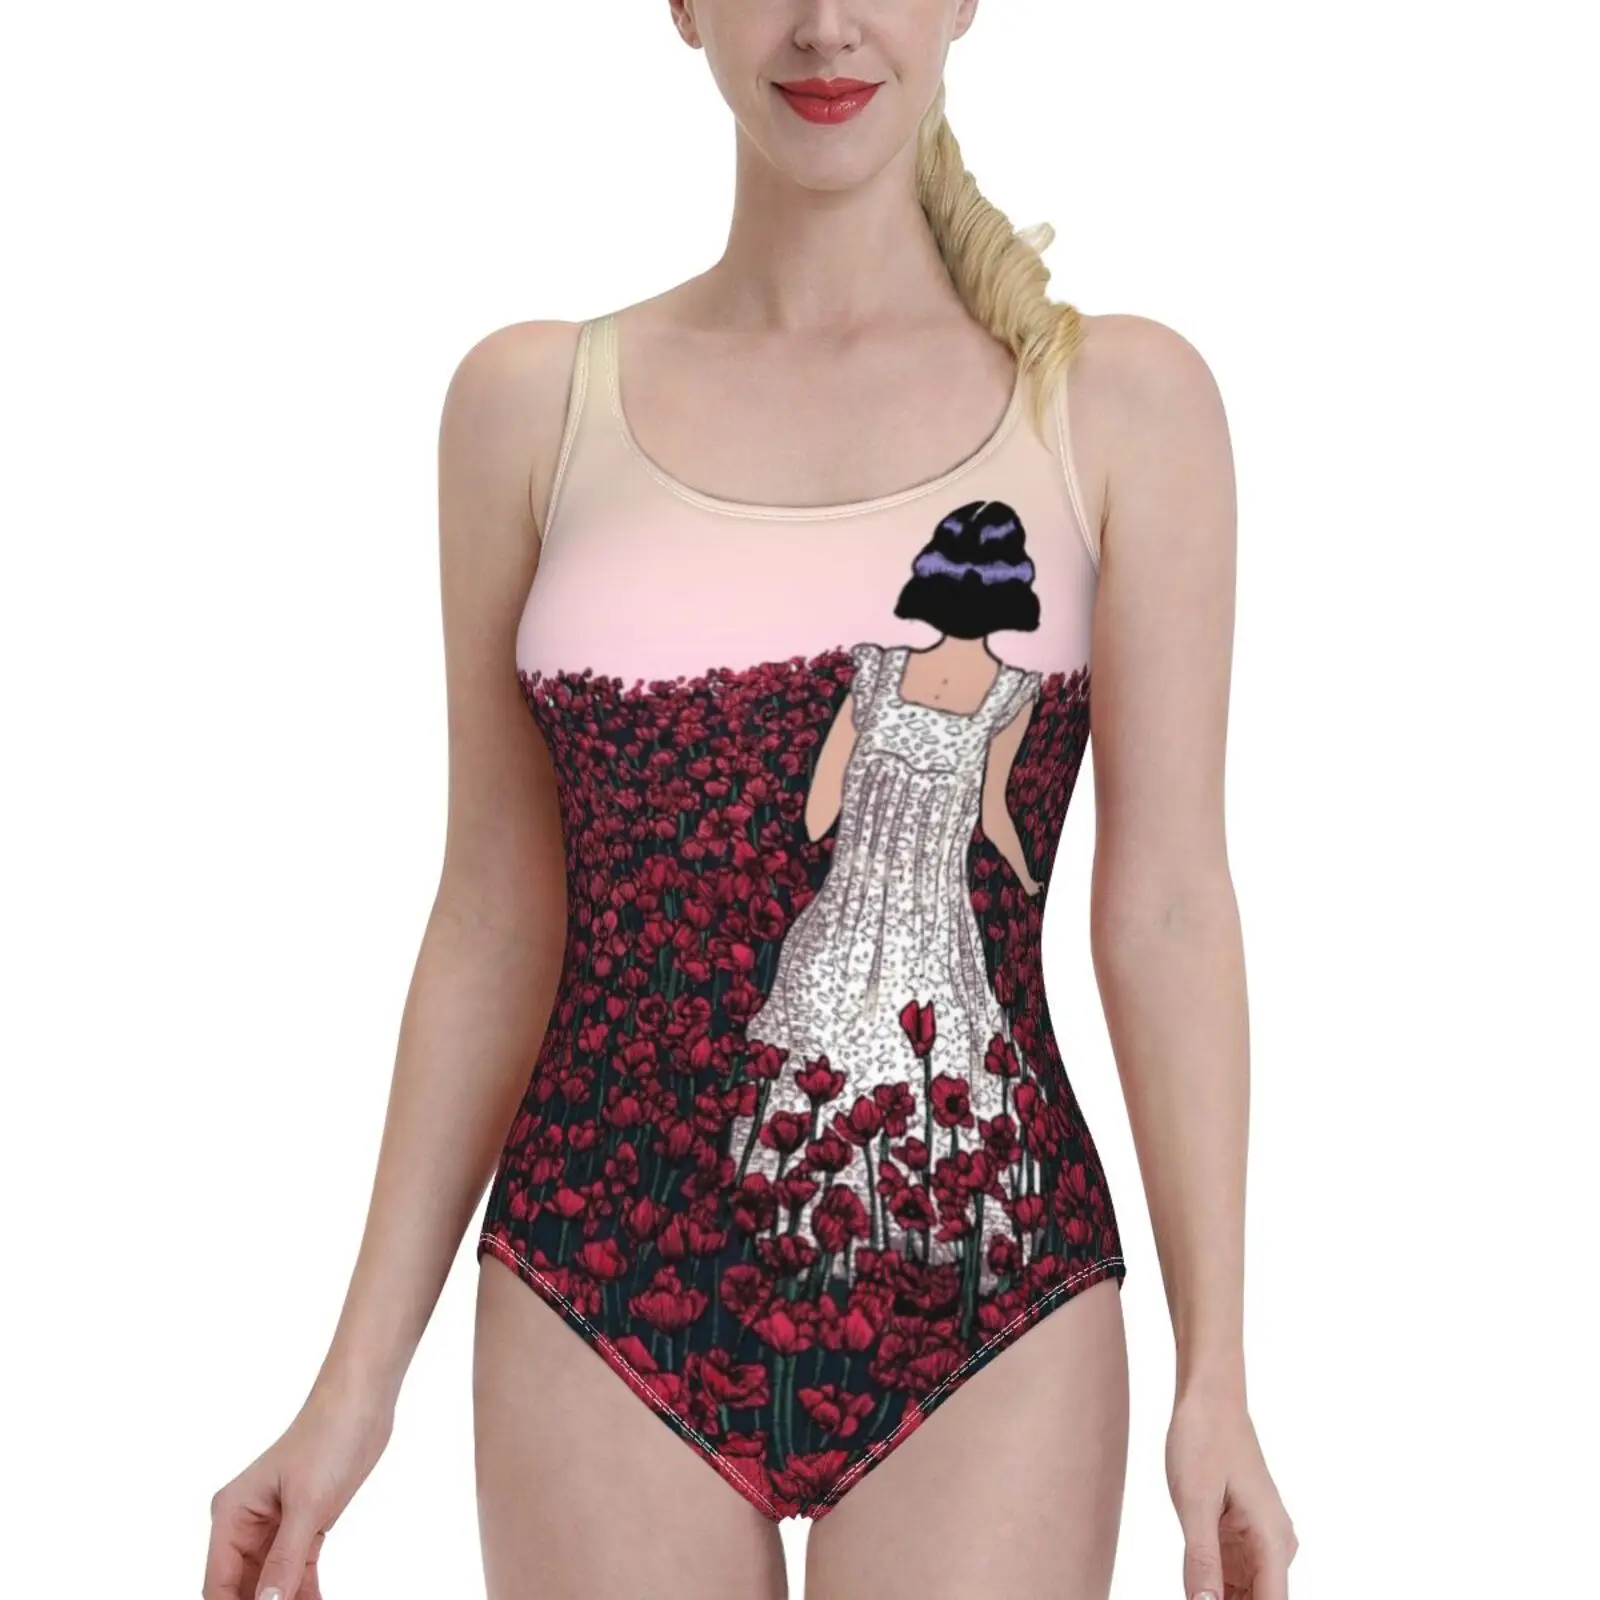 

Поле мака | Разноцветный женский купальник, слитный купальник с открытой спиной, сексуальная пляжная одежда, летние купальные костюмы, Маки